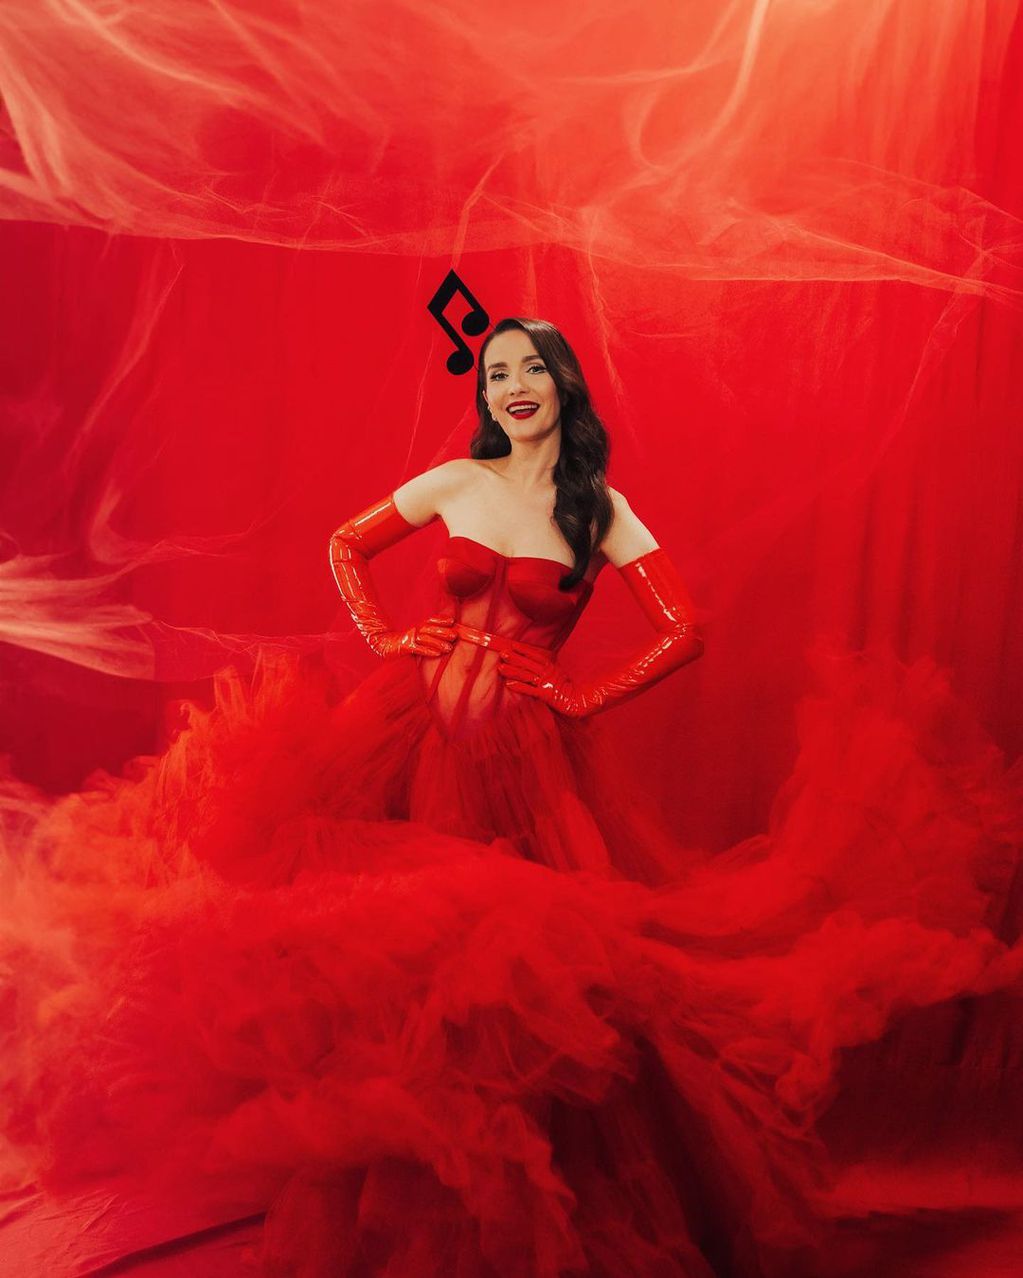 A puro fuego, Natalia Oreiro encandiló a sus fans con un vestido rojo